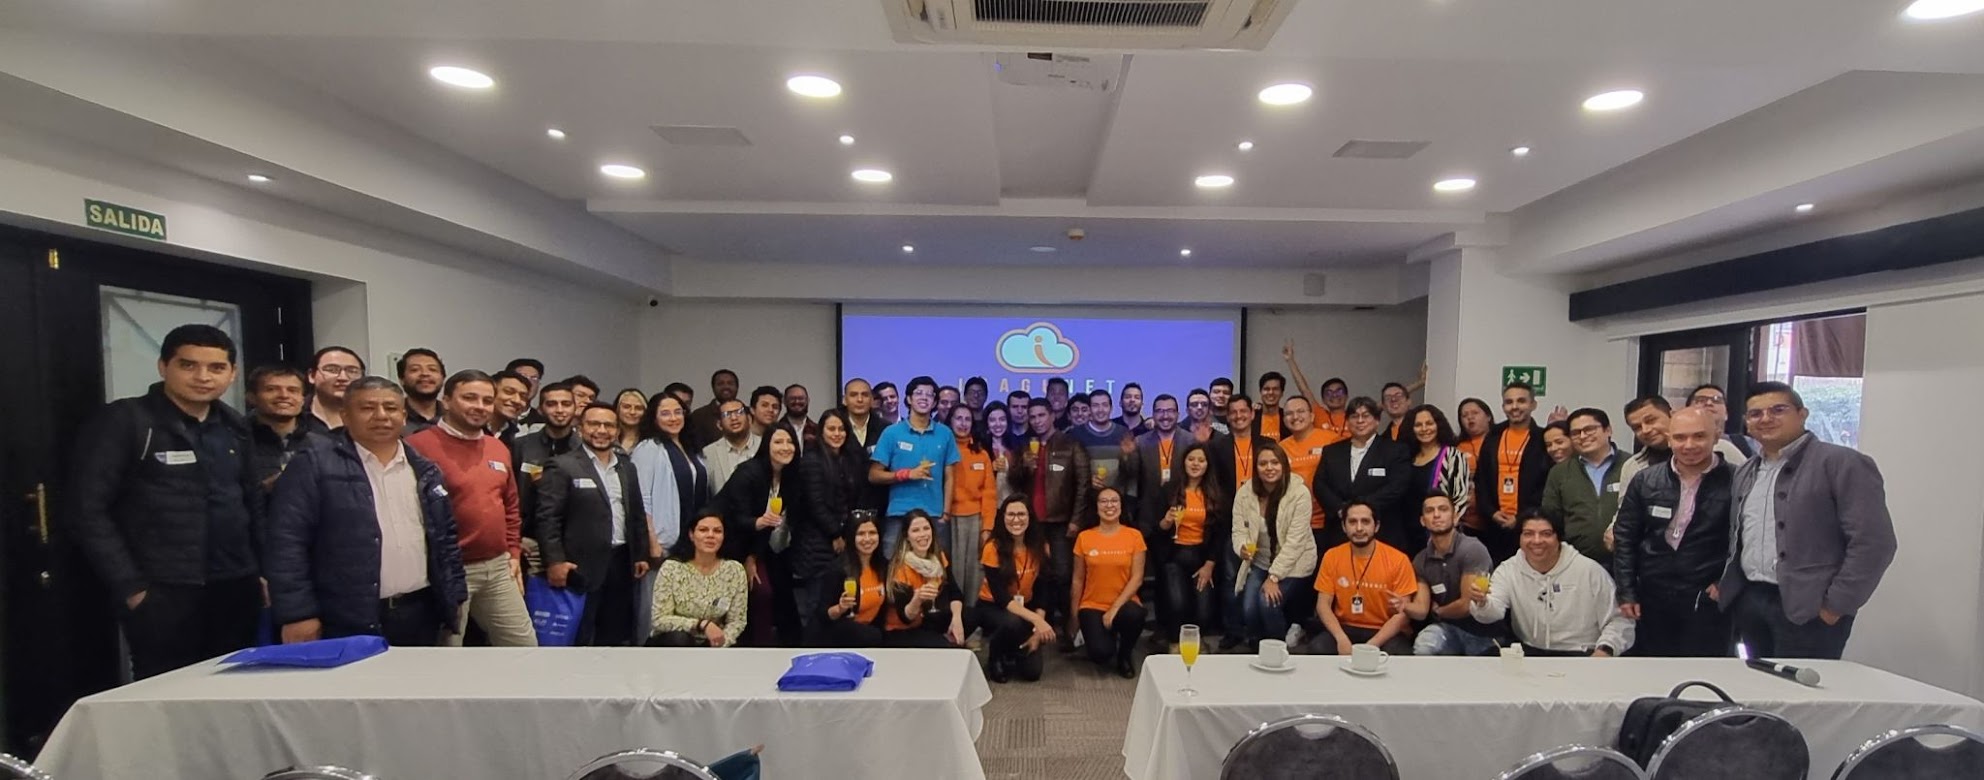 Algunos de los expertos en el campo que asistieron al encuentro de código abierto organizado por Imagunet en Bogotá, Colombia